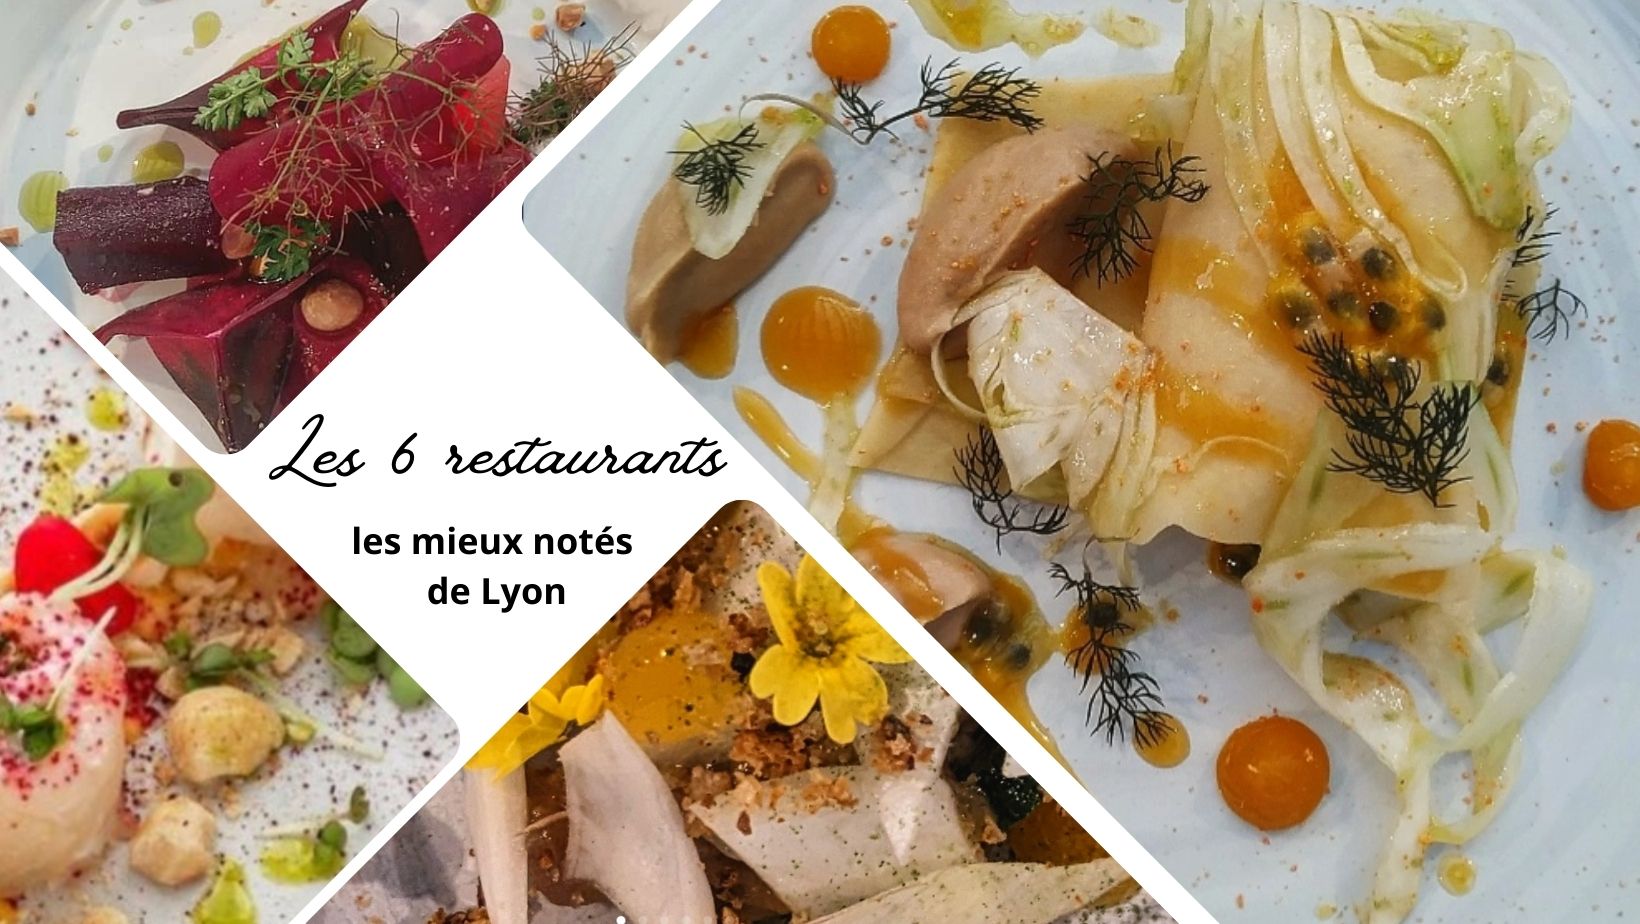 Les 6 restaurants les mieux notés de Lyon